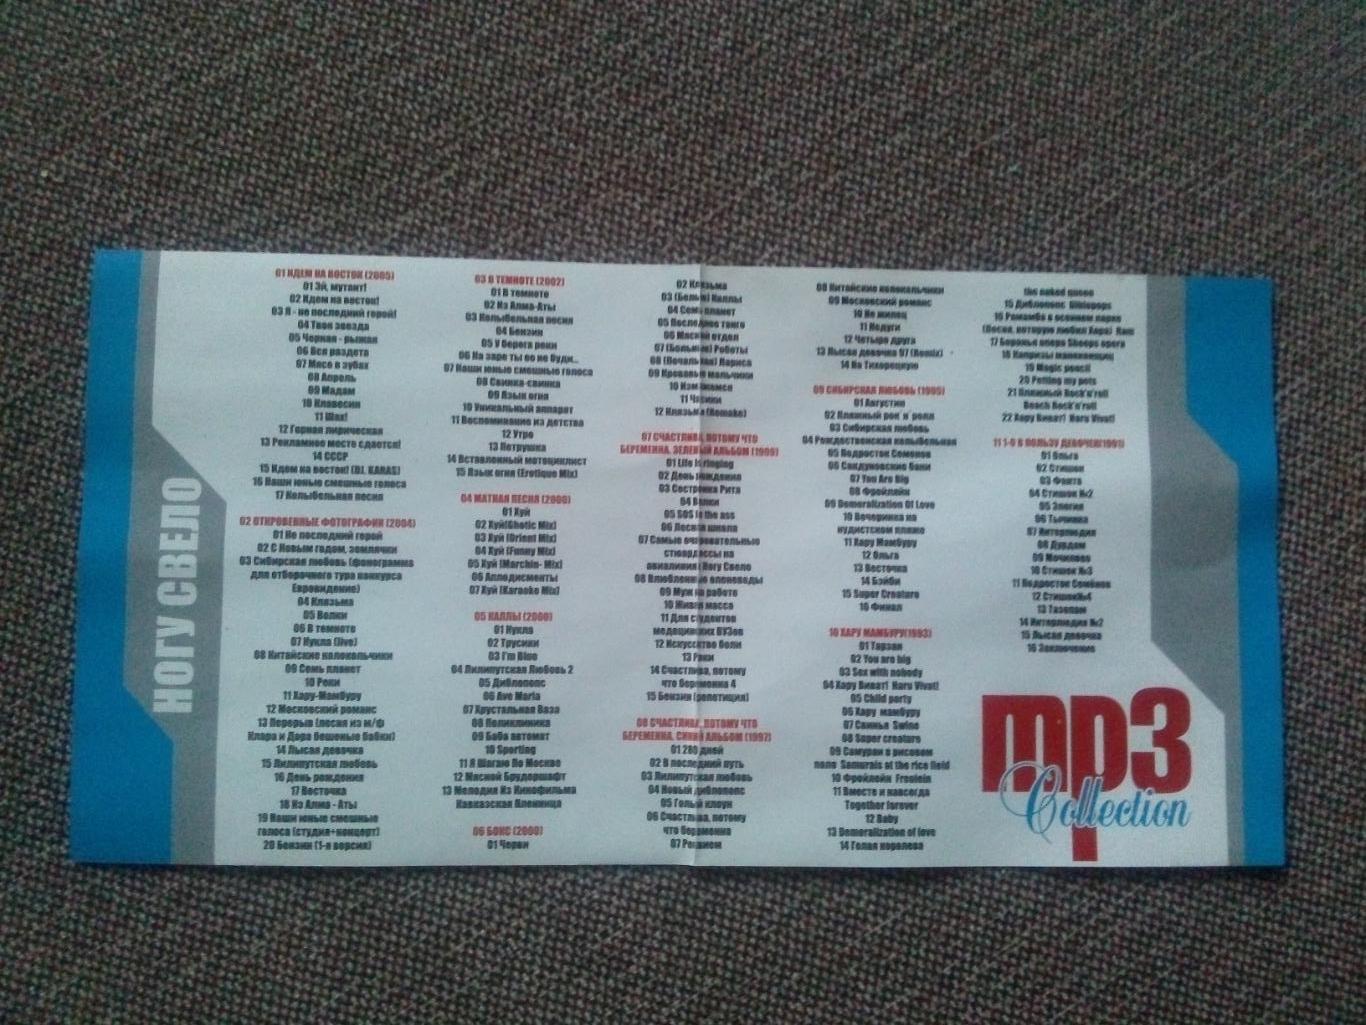 MP - 3 CD диск : группаНогу свело1991 - 2005 гг. 11 альбомов Рок - музыка 3